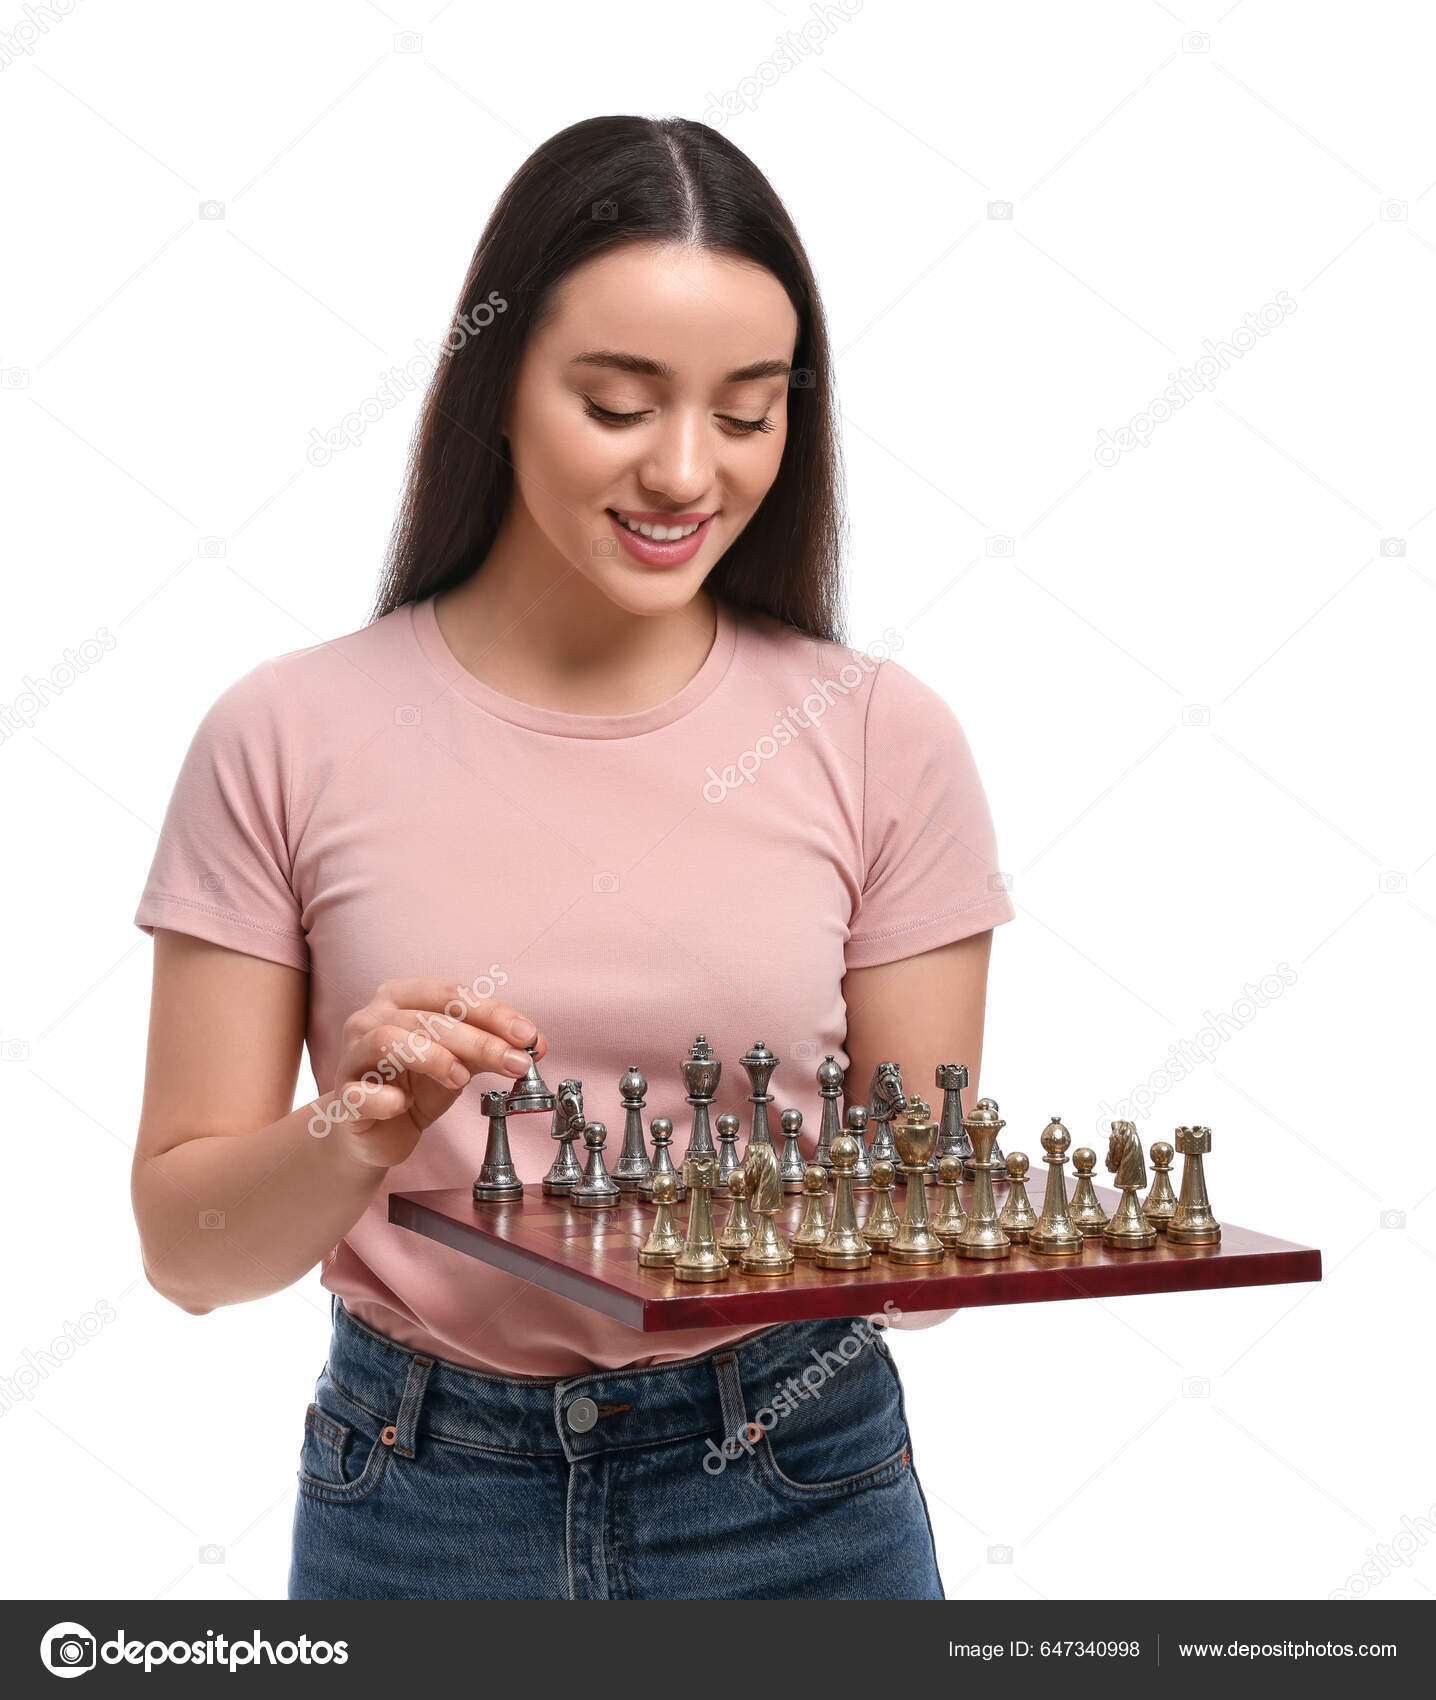 Closeup imagem de pessoas jogando e se movendo damas em um tabuleiro de  xadrez